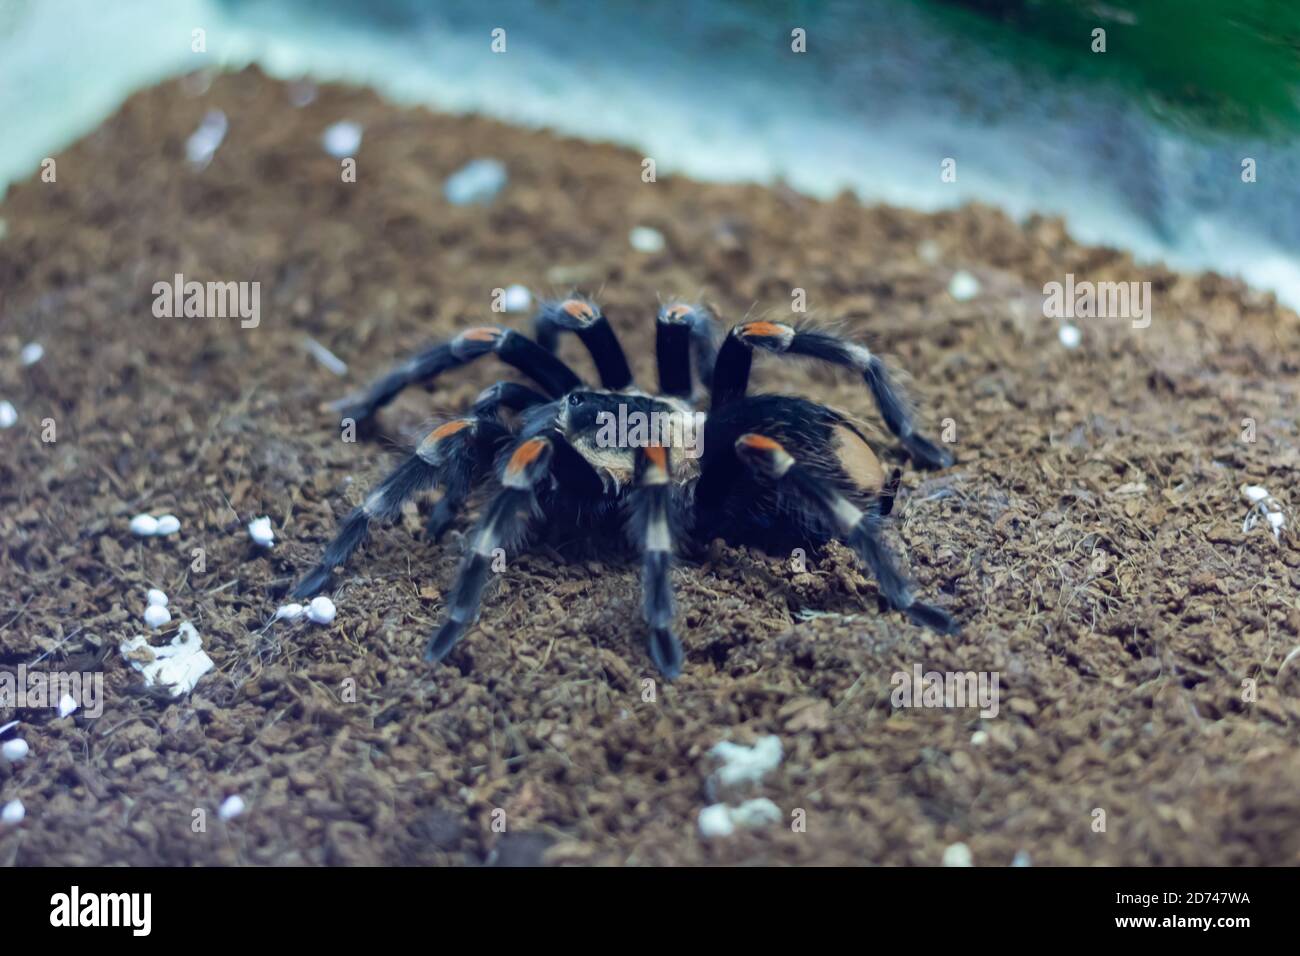 Big black spider Stock Photo - Alamy